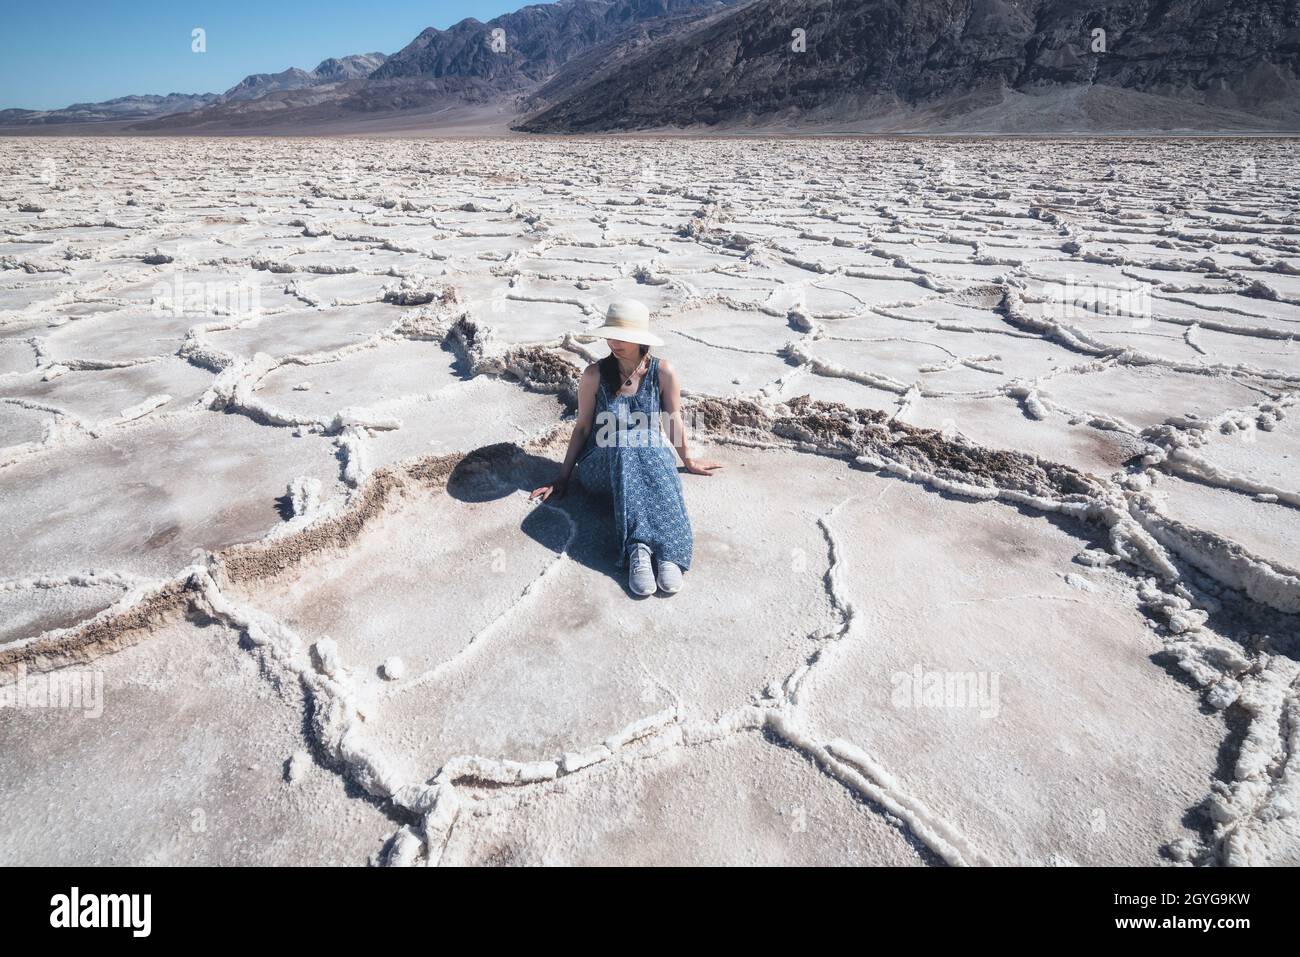 Salt Flats dans le parc national de la Vallée de la mort. Silhouette d'une femme qui profite de la vue. Sentier de randonnée de Badwater Basin, aventure de sentier à travers les plaques de sel bouleversements Banque D'Images